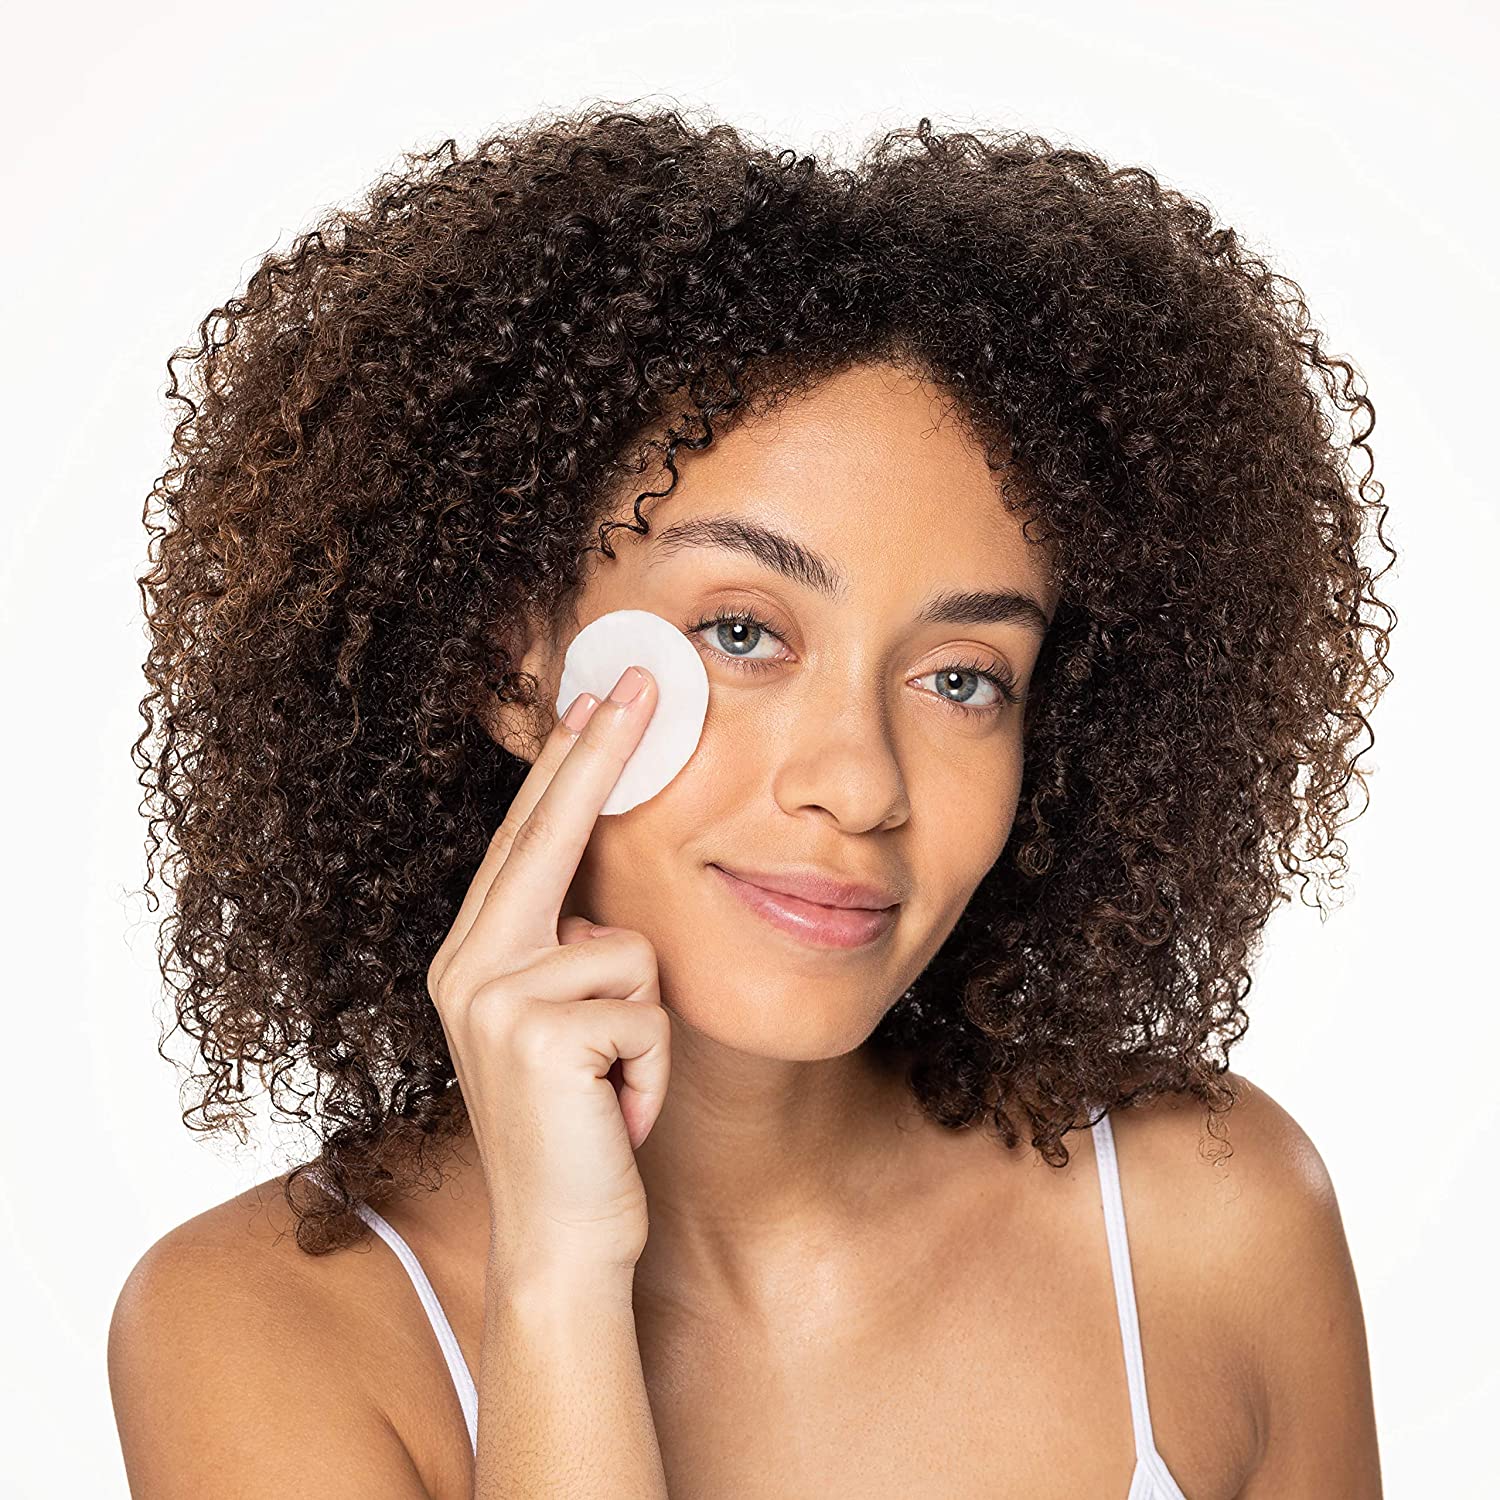 Makeup Remover: चेहरे को साफ और सुंदर रखना है तो  मेकअप क्लीन करने की आदत जरूर डालें, ये हैं बेस्ट 5 मेकअप रिमूवर